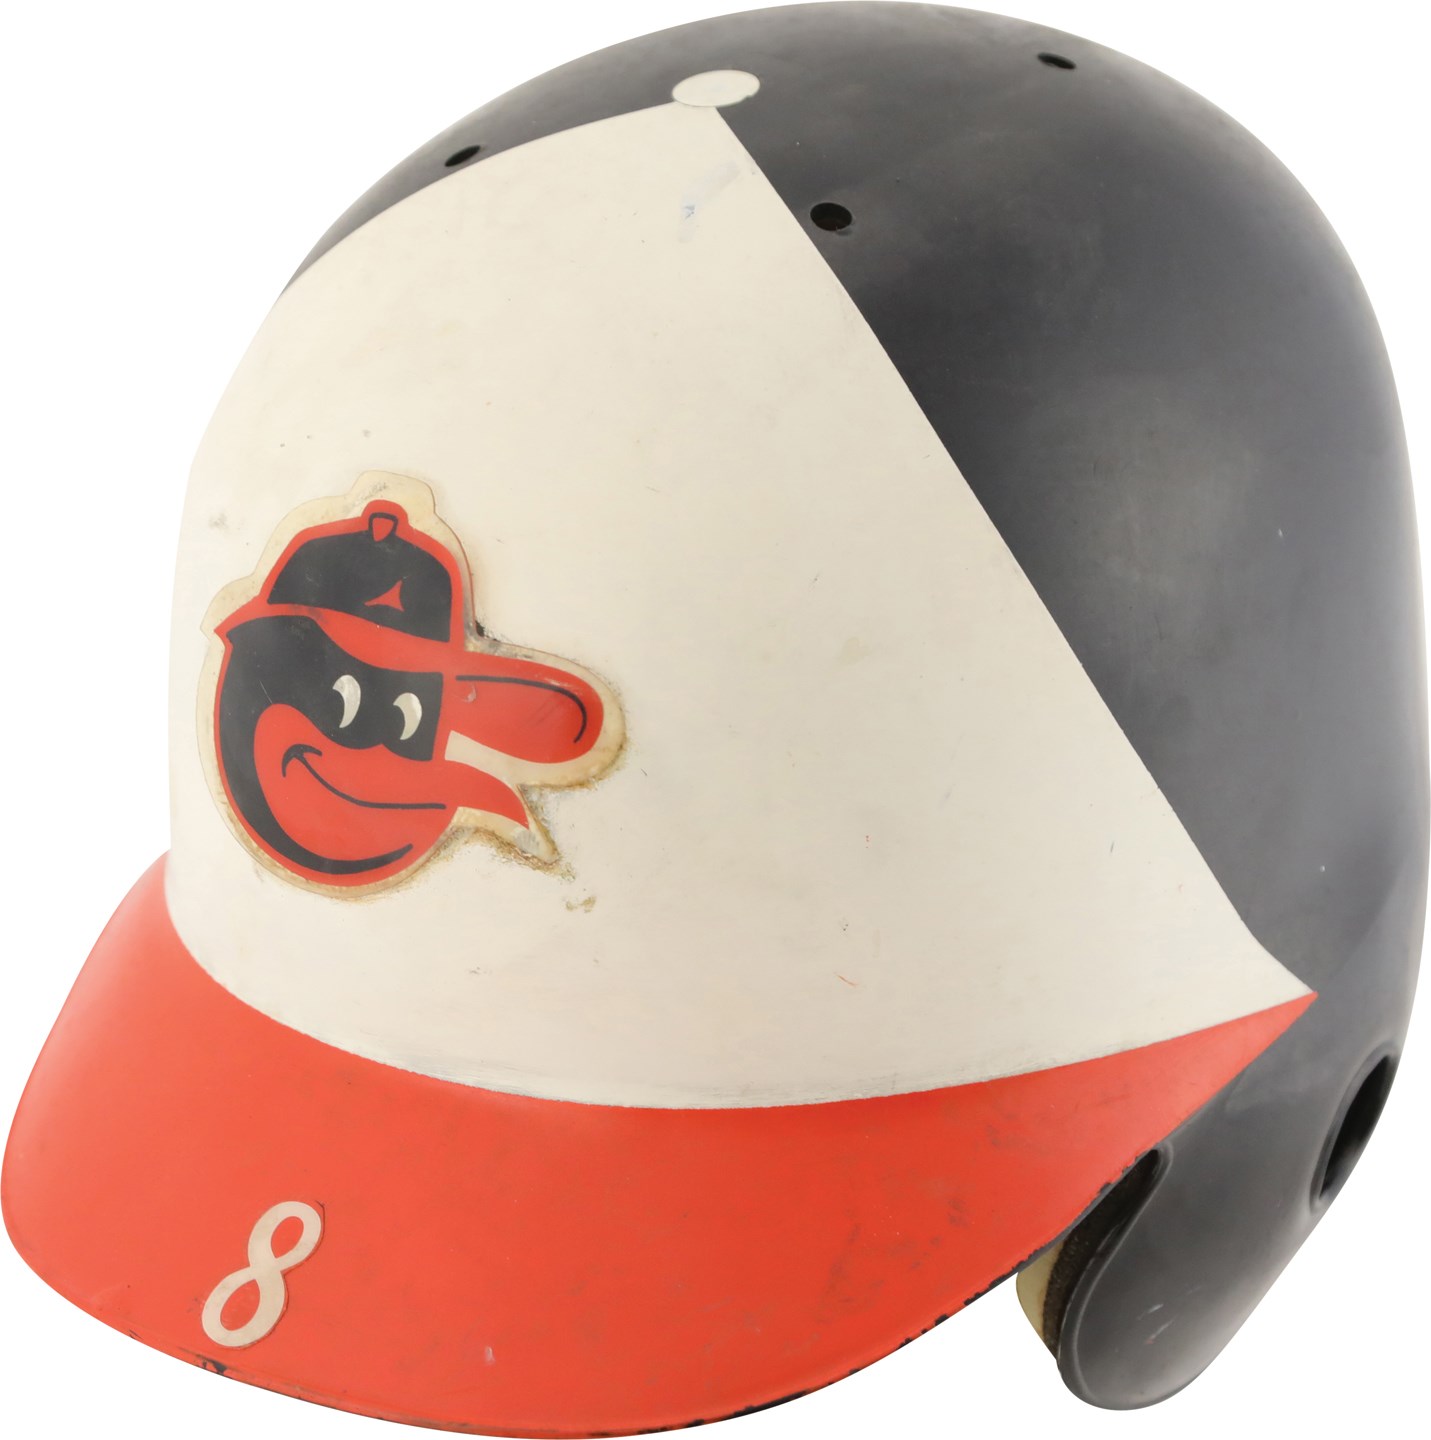 Baseball Equipment - Rookie Era Cal Ripken Jr. Baltimore Orioles Game Used Batting Helmet